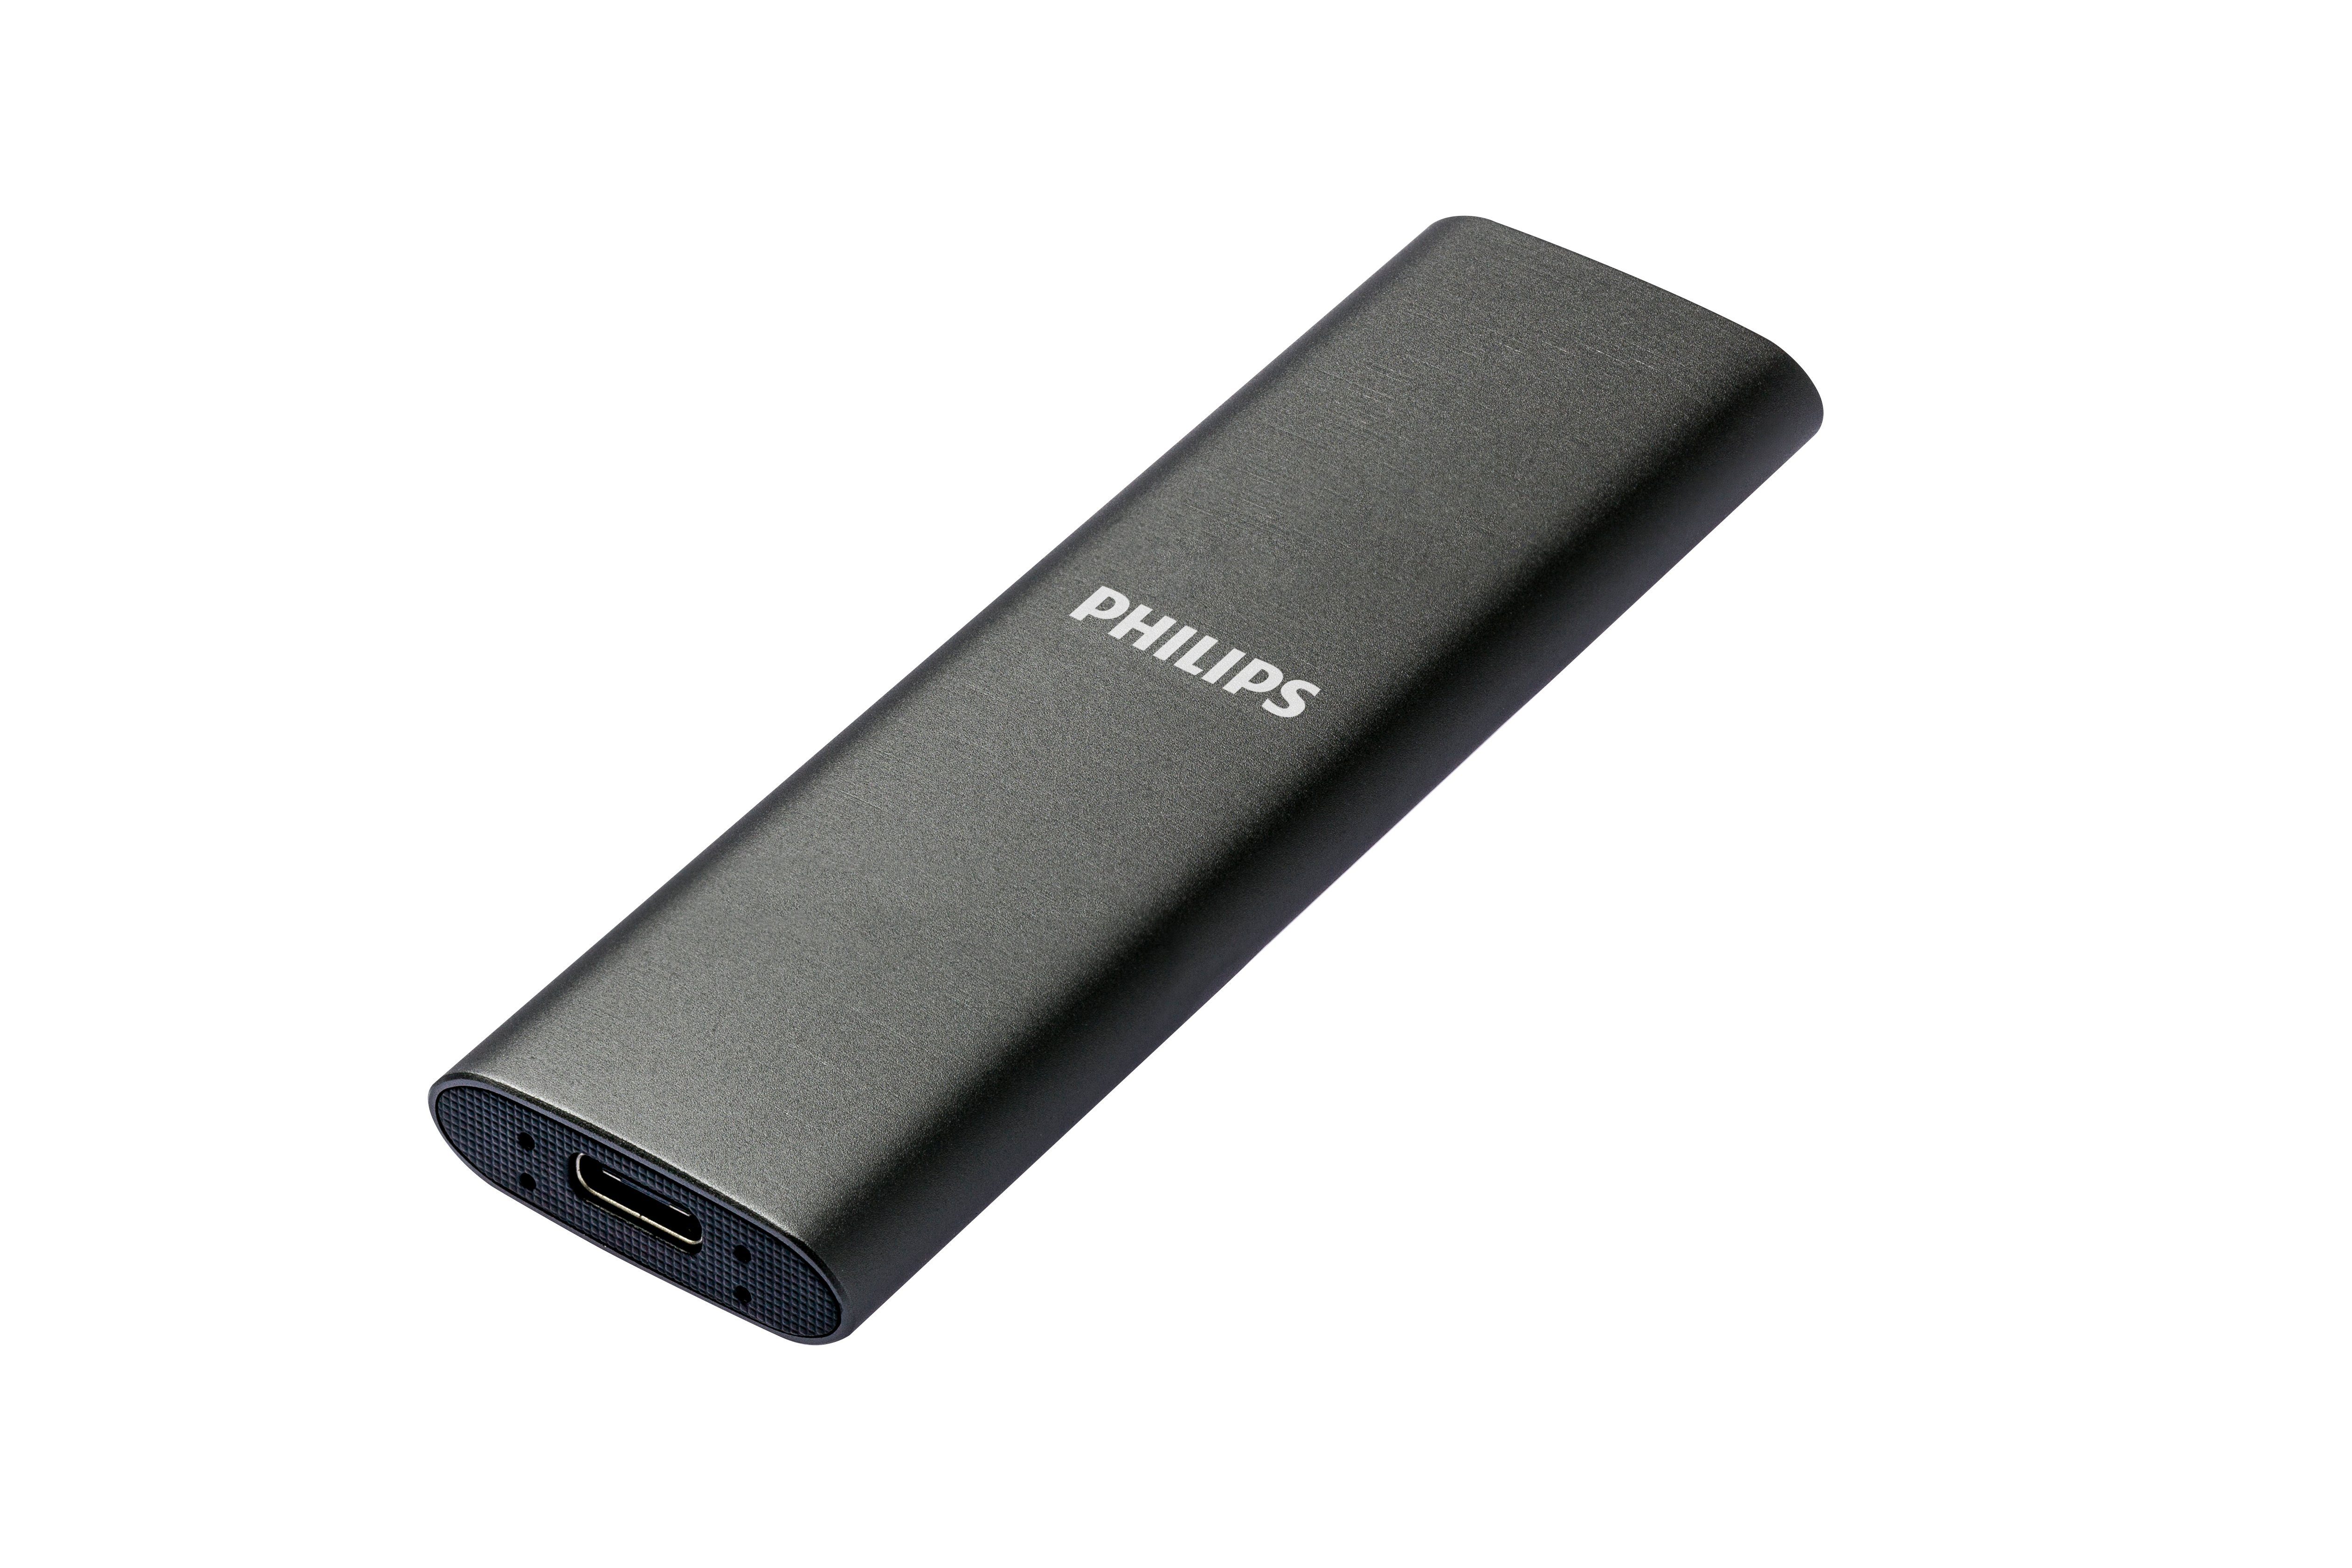 Philips FM50SS030P/00 externe SSD (500GB) Lesegeschwindigkeit, Aluminium, MB/S Space Ultra Schreibgeschwindigkeit, MB/S Grey, 3.2 Speed 540 USB-C 520 SATA"